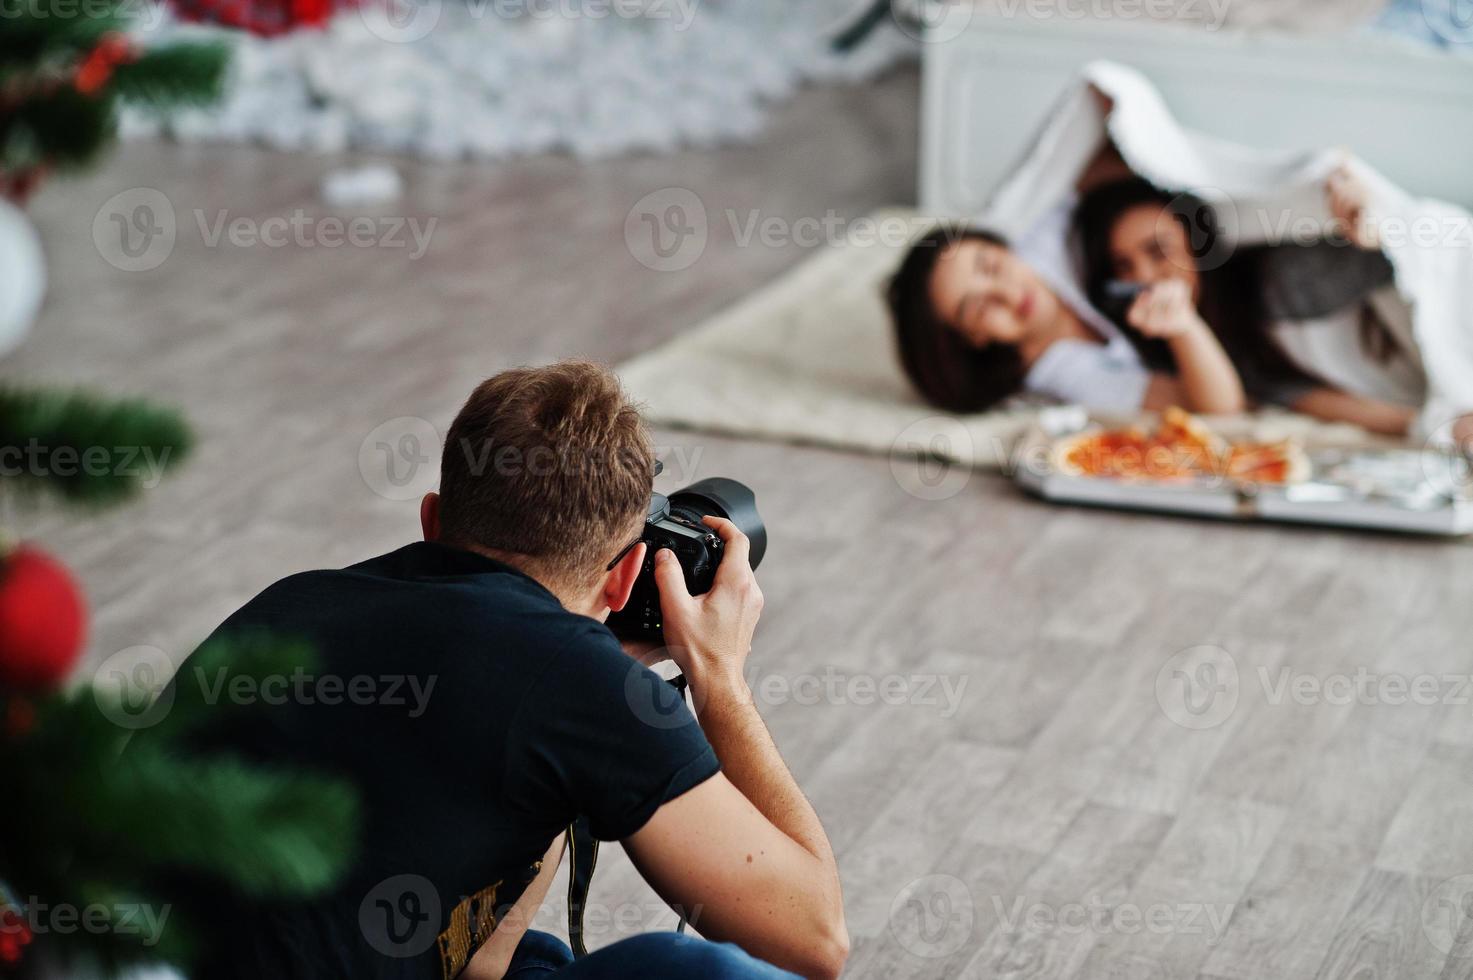 fotografo uomo spara su ragazze gemelle in studio che stanno mangiando pizza. fotografo professionista al lavoro. foto